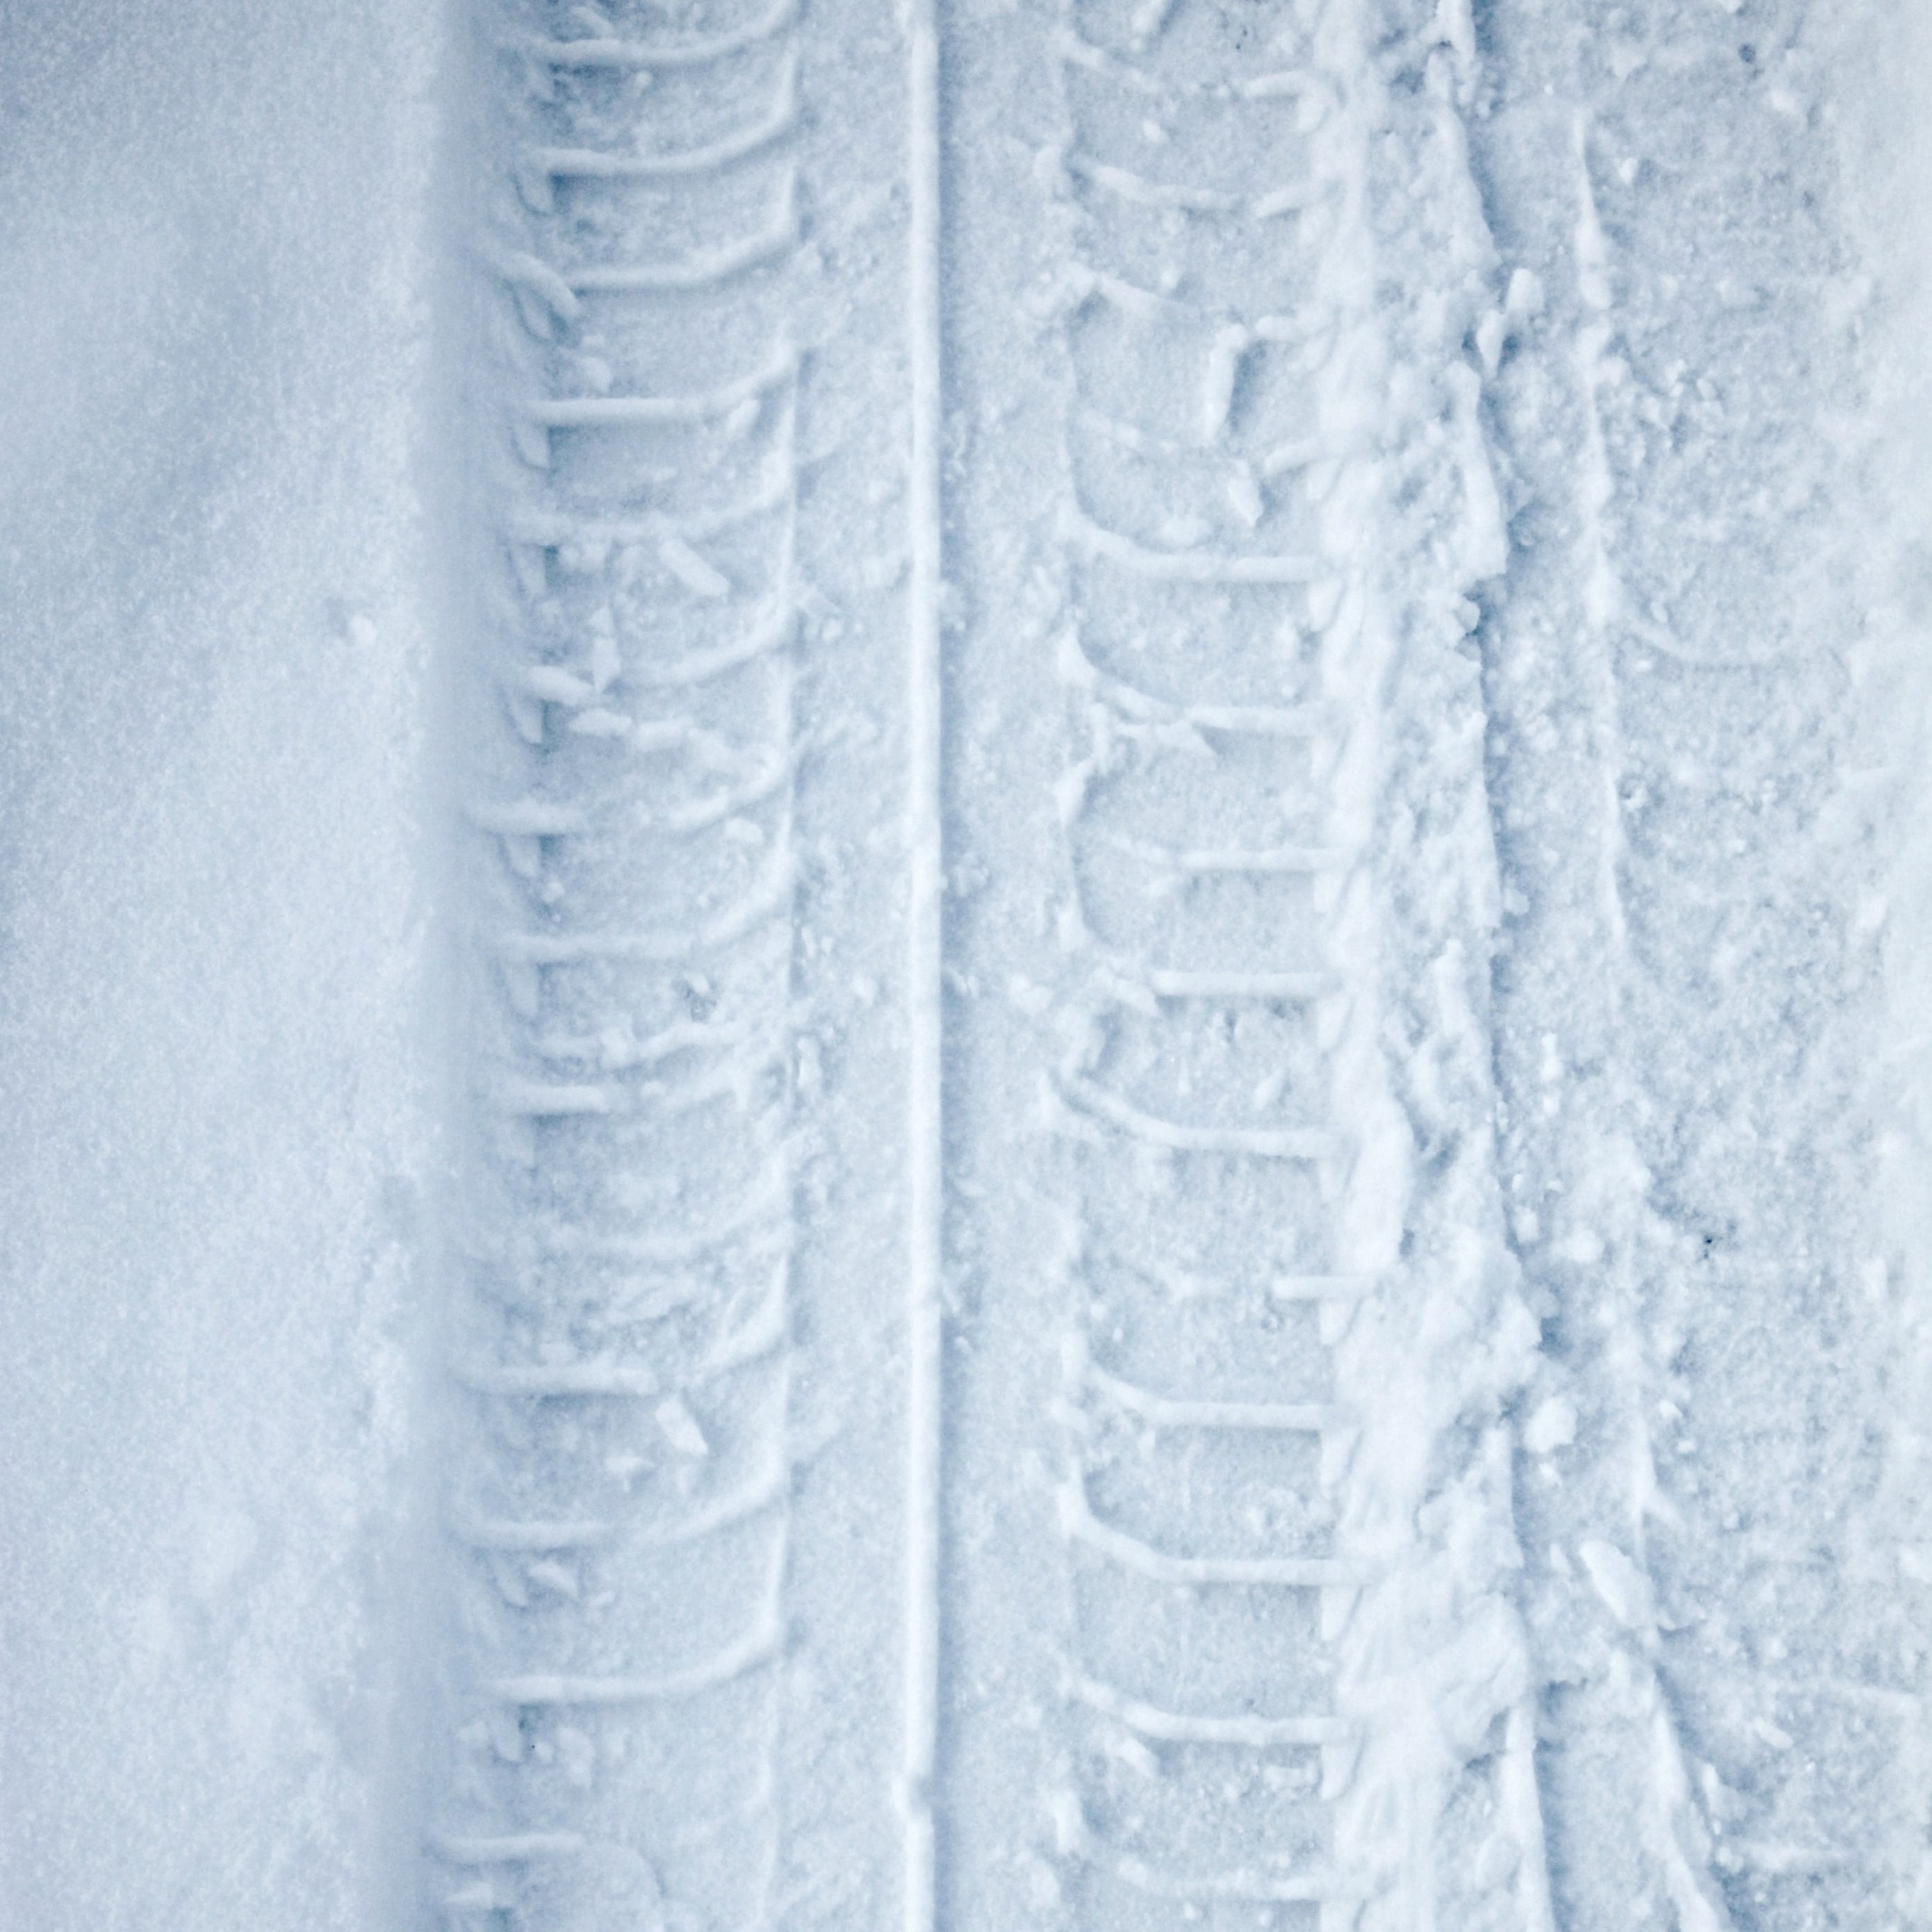 2780x2780 Parallax wallpaper 4k Tyre Track Snow Winter iPad Wallpaper 2780x2780 pixels resolution